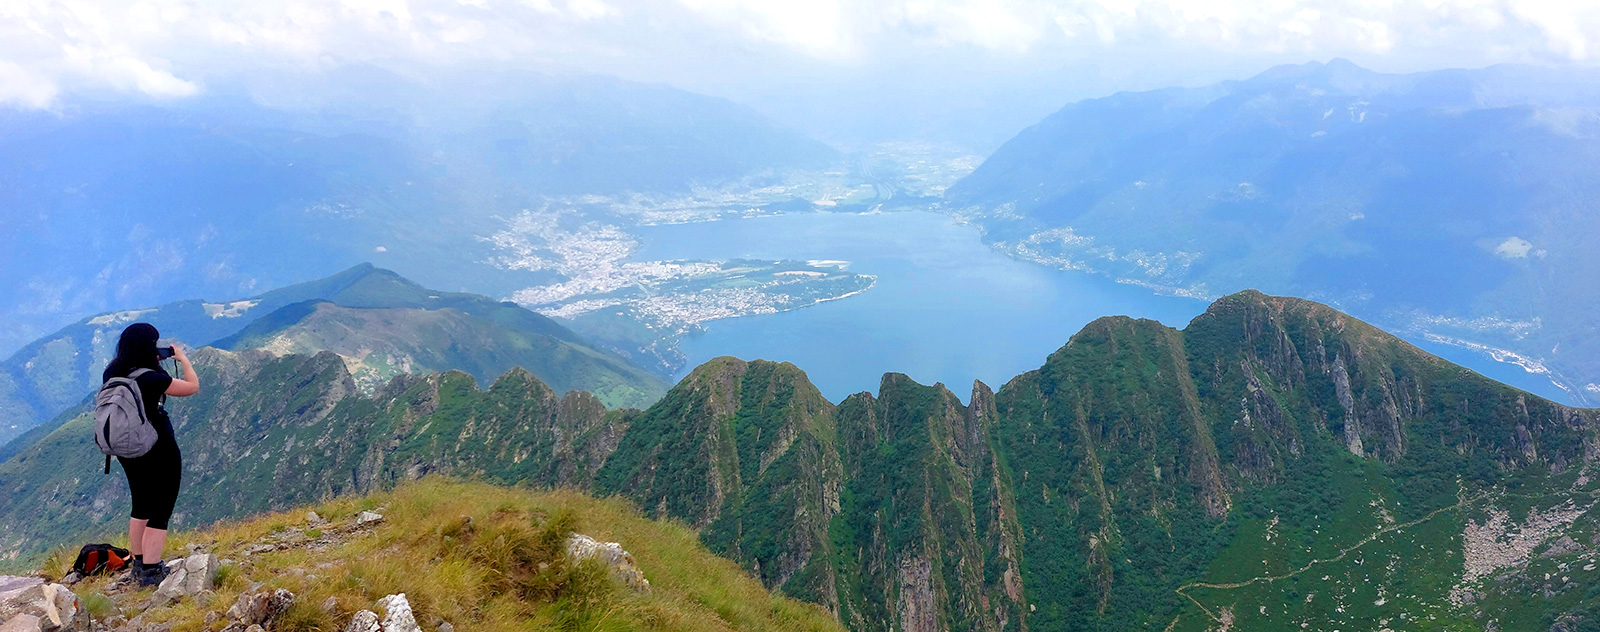 Alpy: Monte Limidario nad jeziorem Maggiore